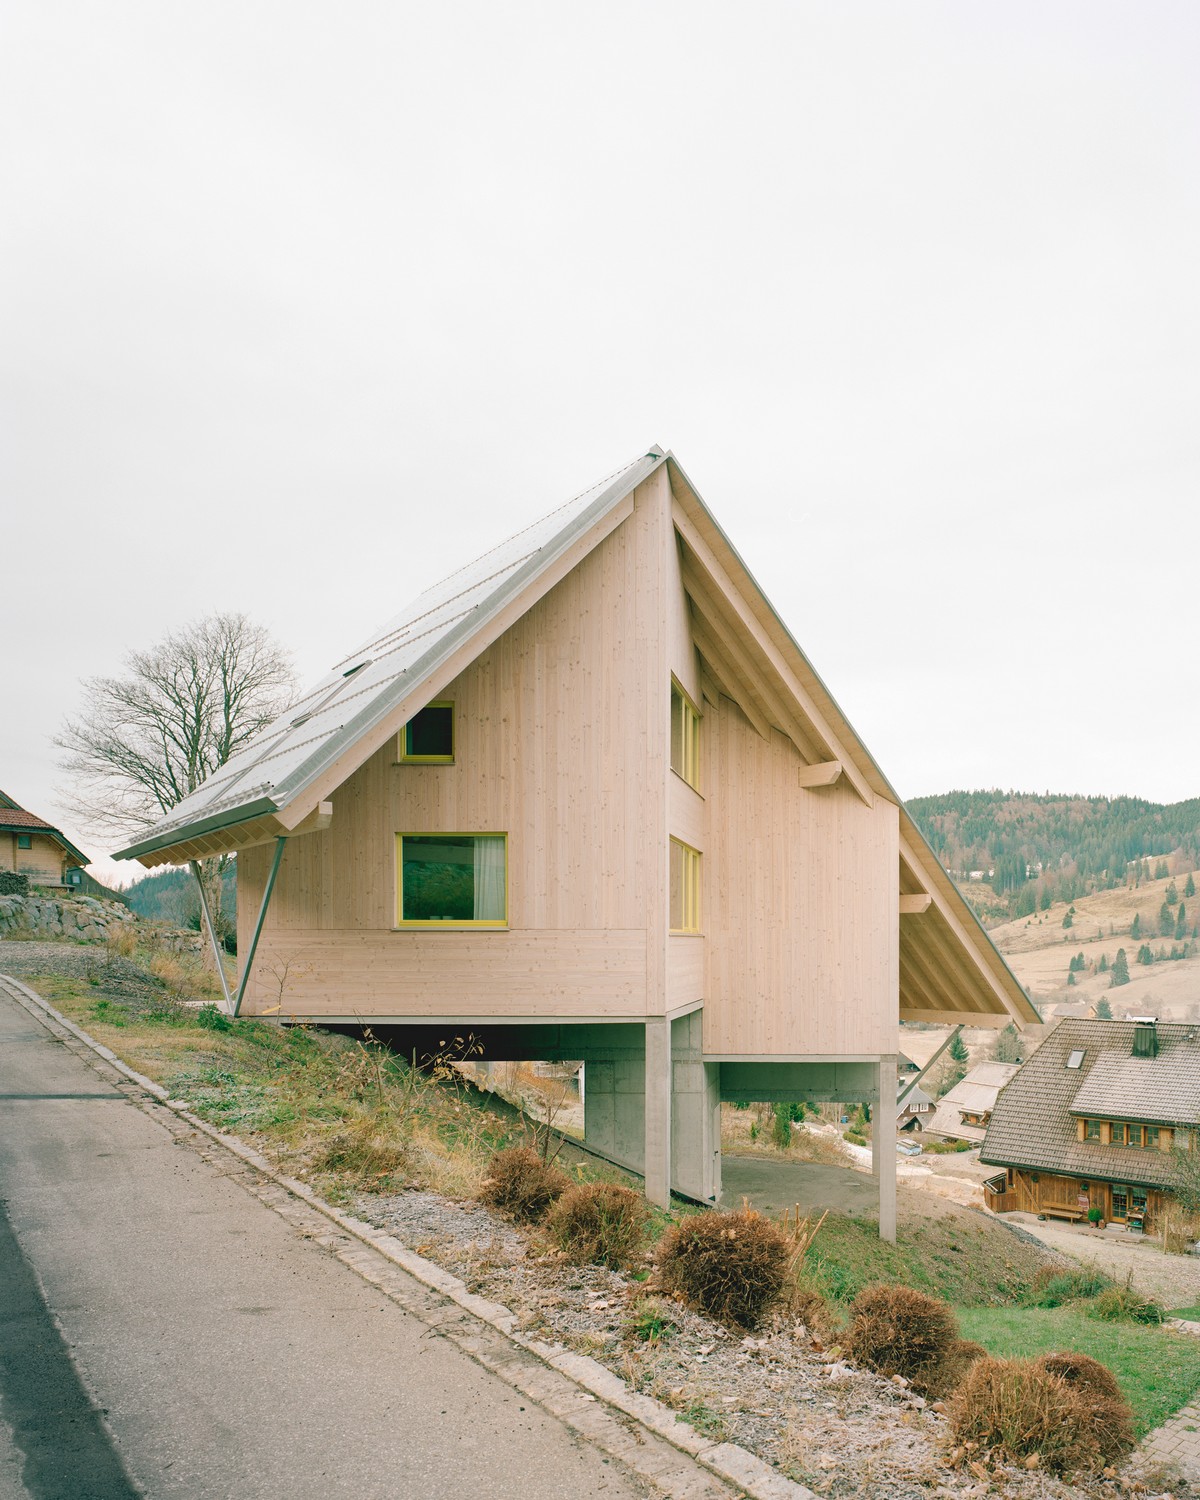 Компактный деревянный дом для отдыха в немецких Альпах через, площадью, деревянный, Германии, Компактный, чтобы, отдыха, контексте, комнаты, очень, разным, настроением, создают, контраст, большим, жилым, Объёмные, пространством, маленькие, проёмы